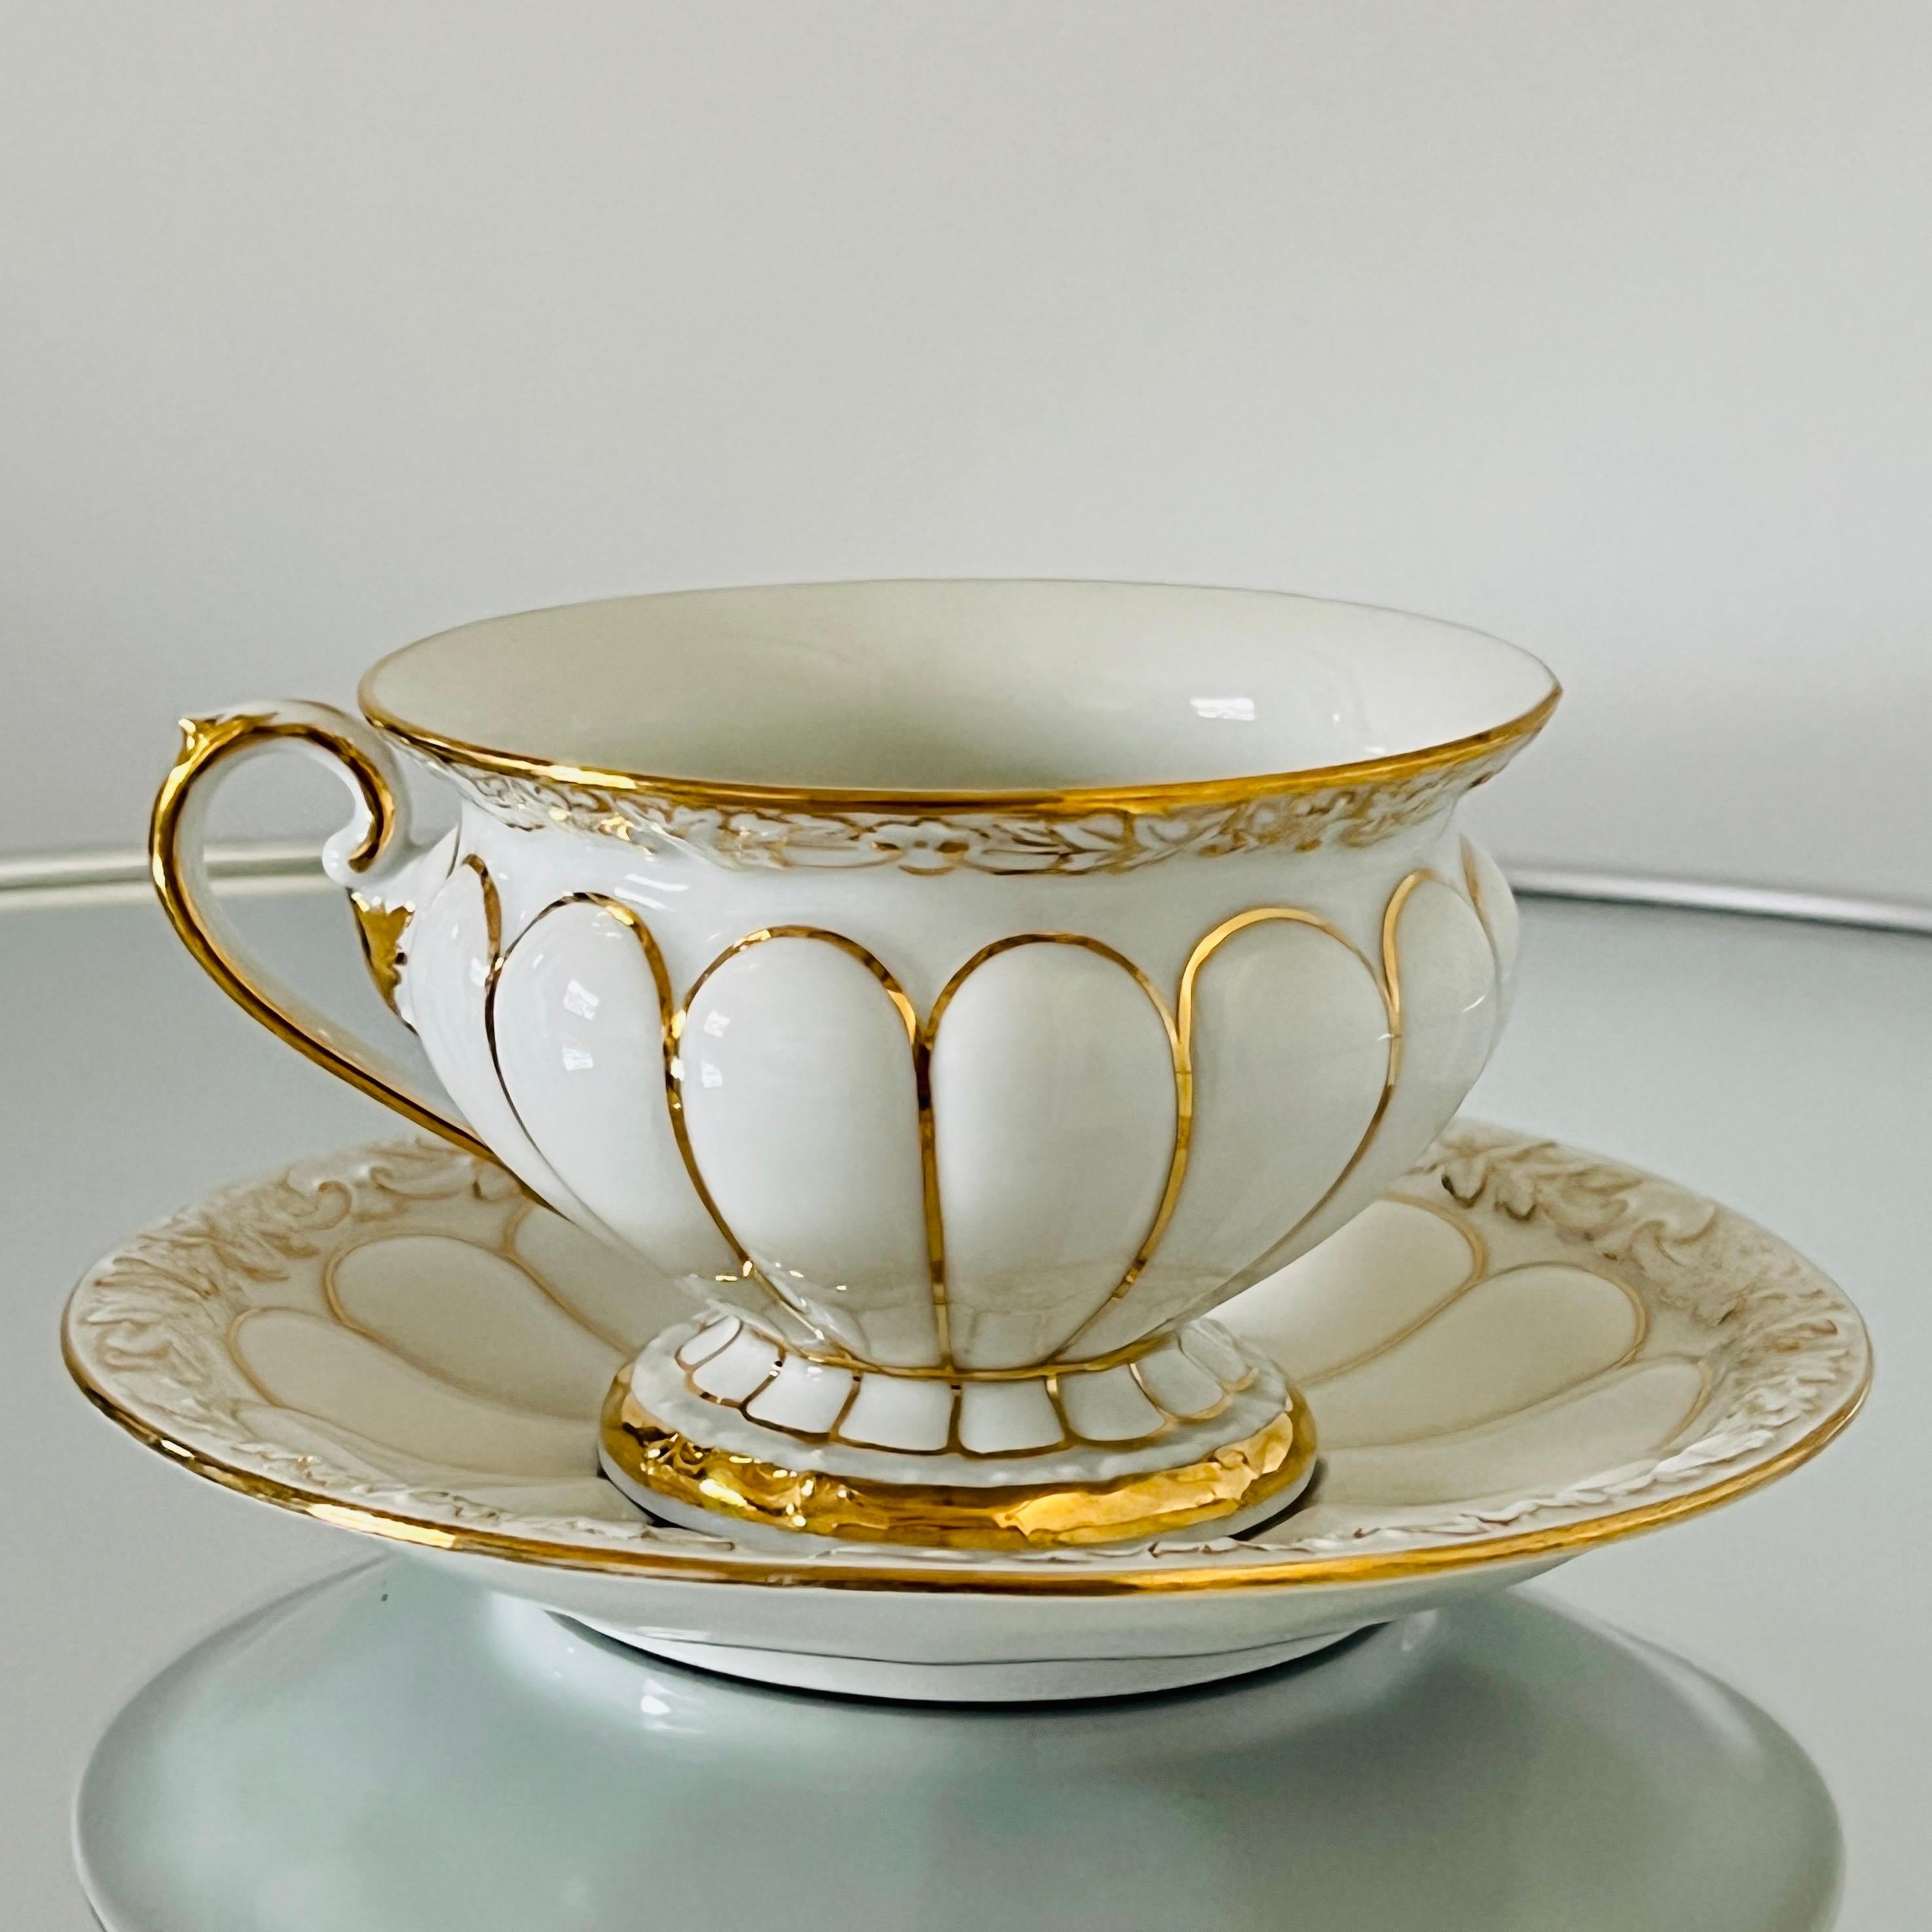 Ensemble de 13 tasses et soucoupes en porcelaine de Meissen de la série opulente Golden Baroque, fabriquées à la main en Allemagne. Les tasses et les soucoupes ont une finition en glaçure blanche avec des motifs ornementaux en relief représentant